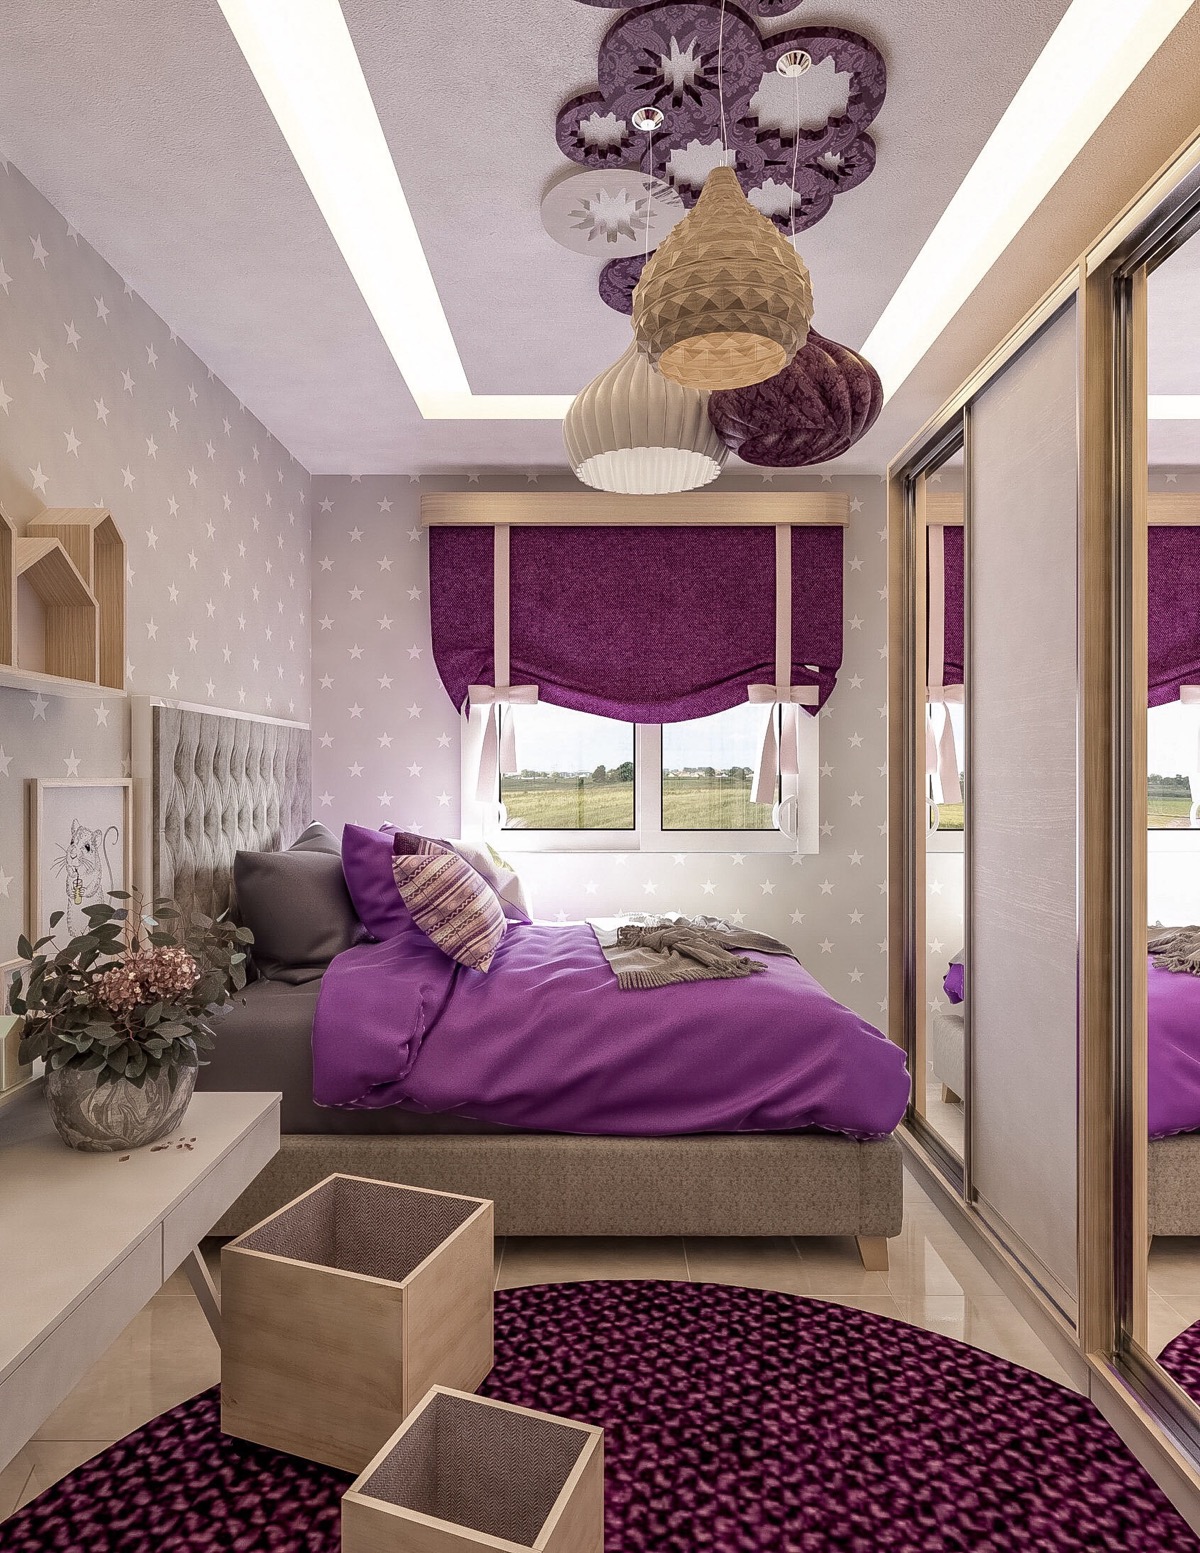 Beige and Lavender Bedroom Design